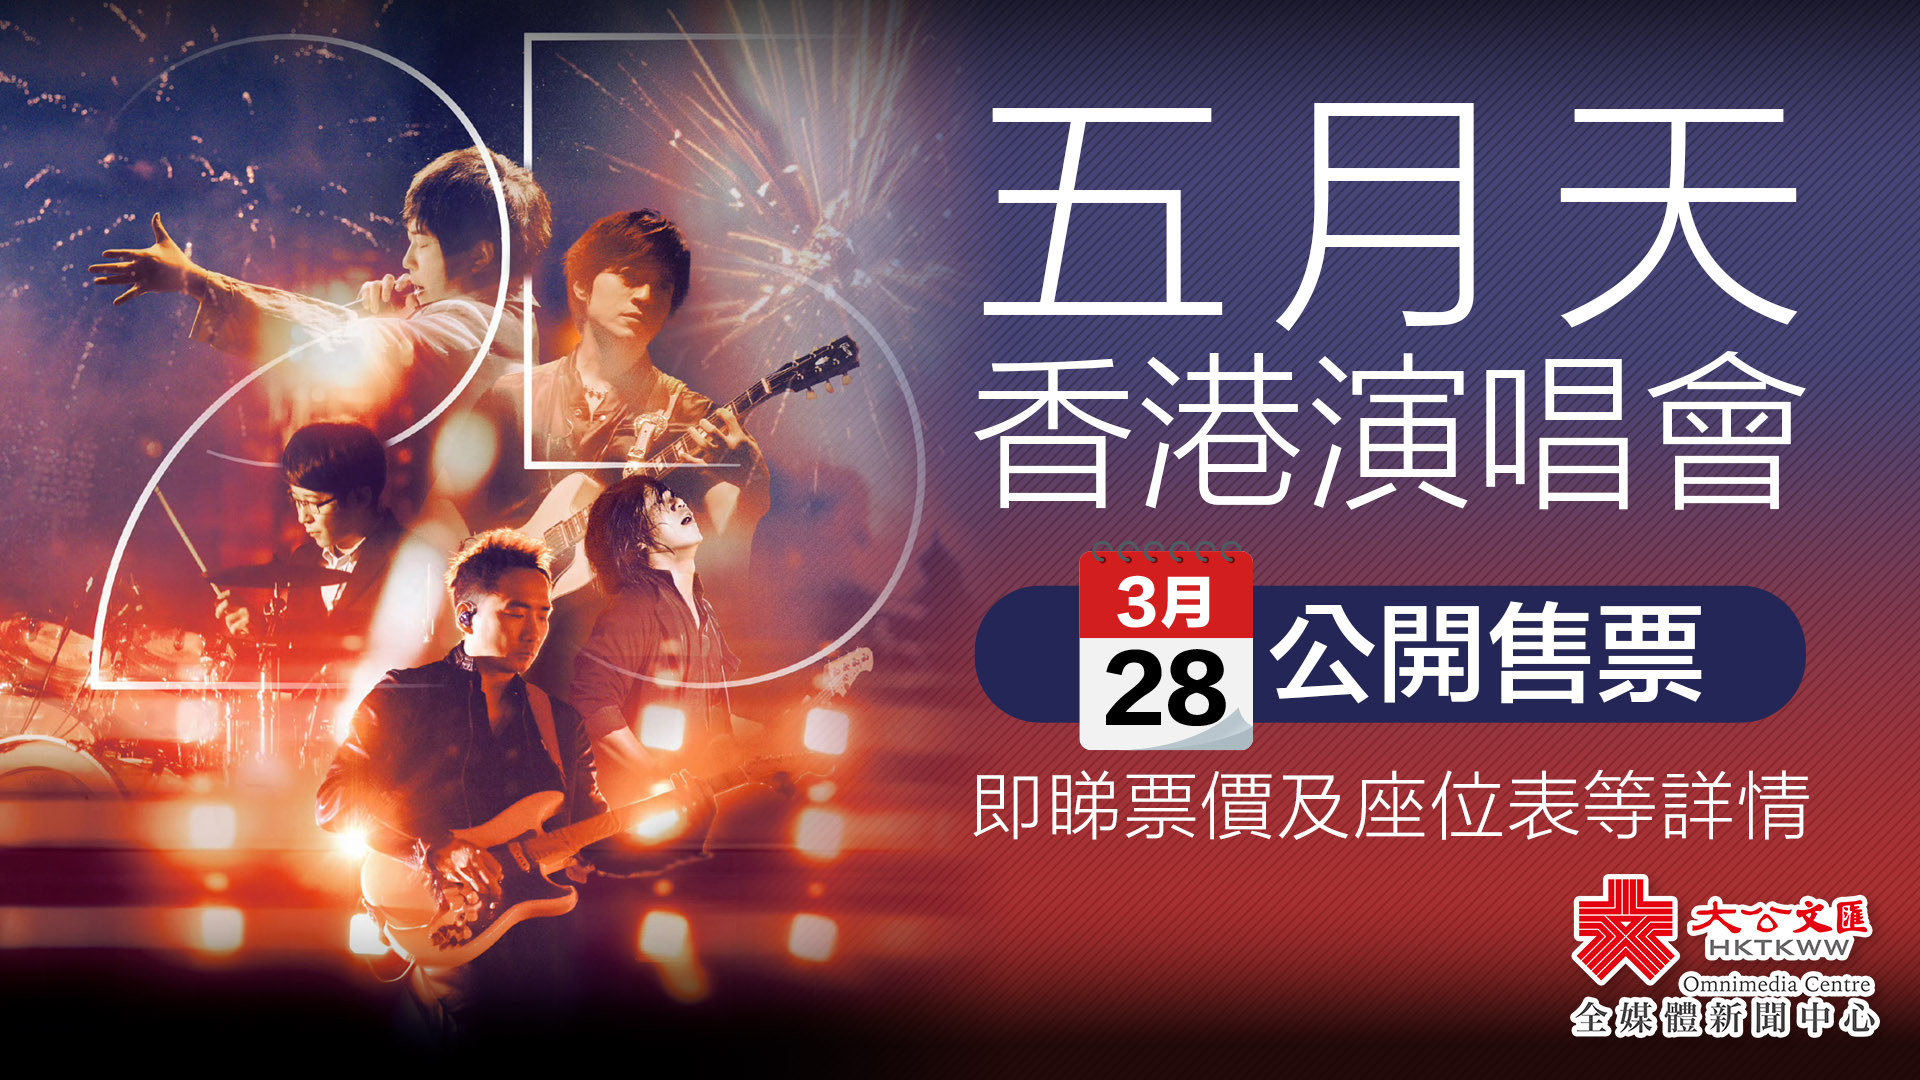 五月天香港演唱會3·28公開售票　即睇票價及座位表等詳情